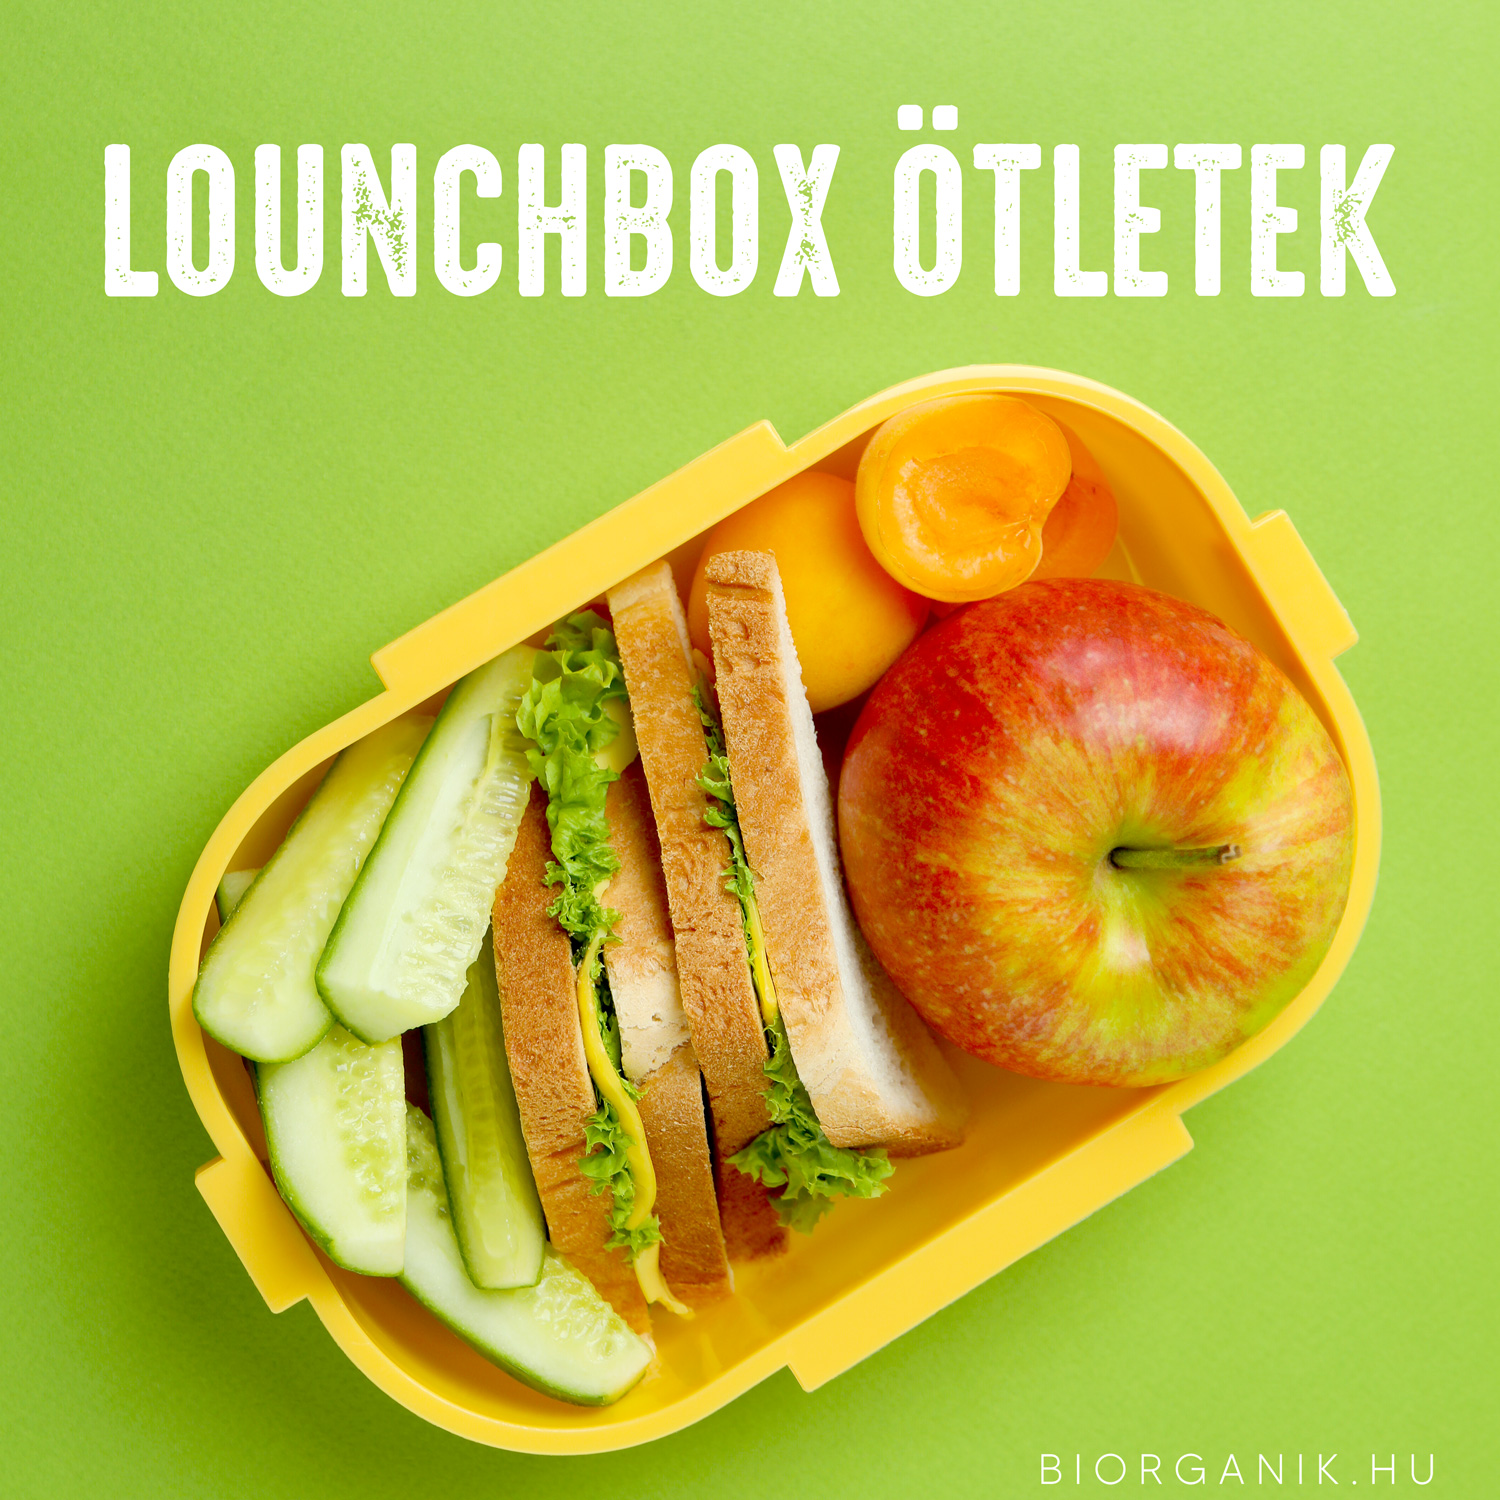 Lunchbox ötletek iskolakezdéshez